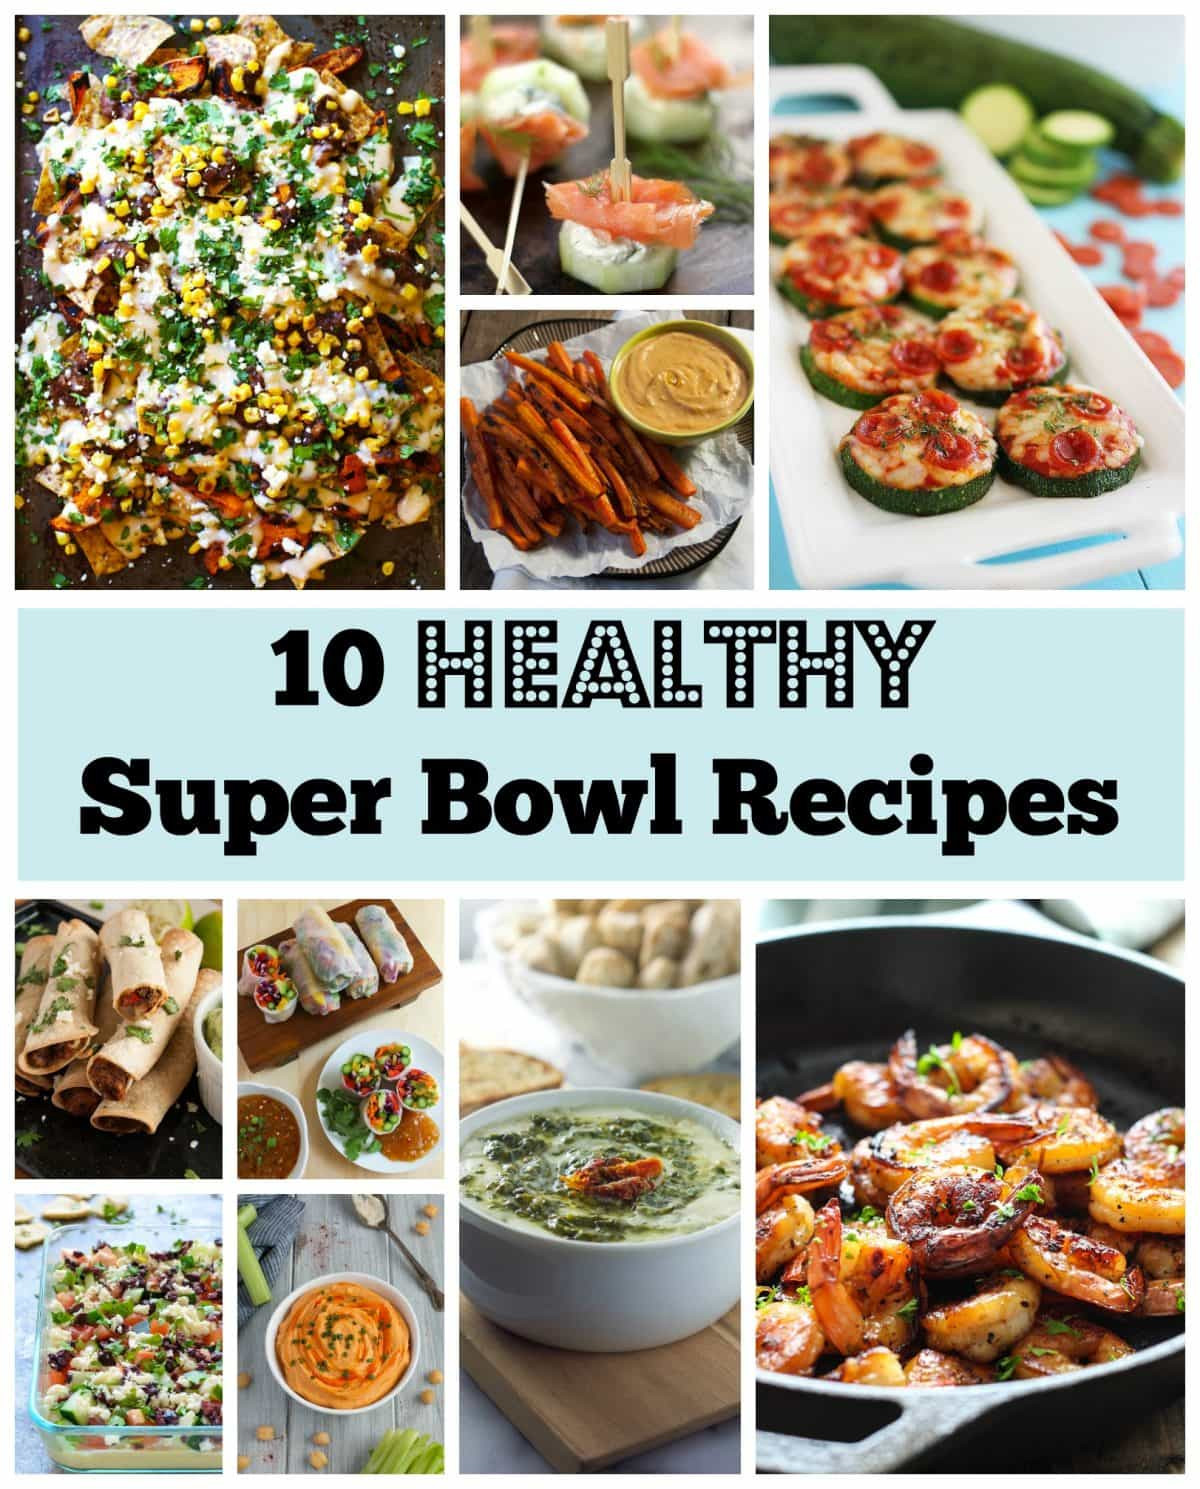 Super Bowl Recipes Pinterest
 Healthy Super Bowl Recipes Feasting not Fasting